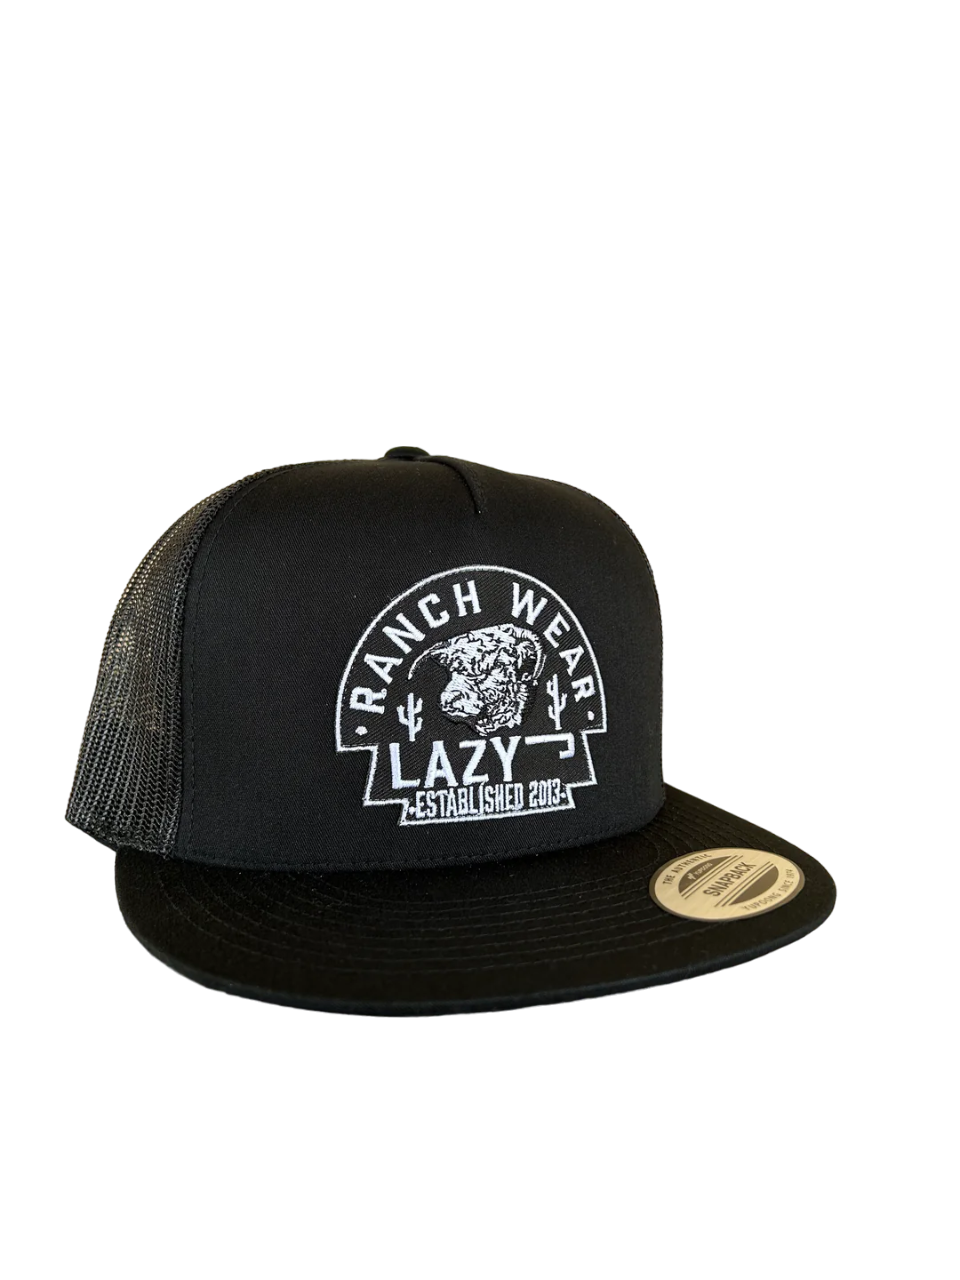 Lazy J Ranch Wear Arrow Cap